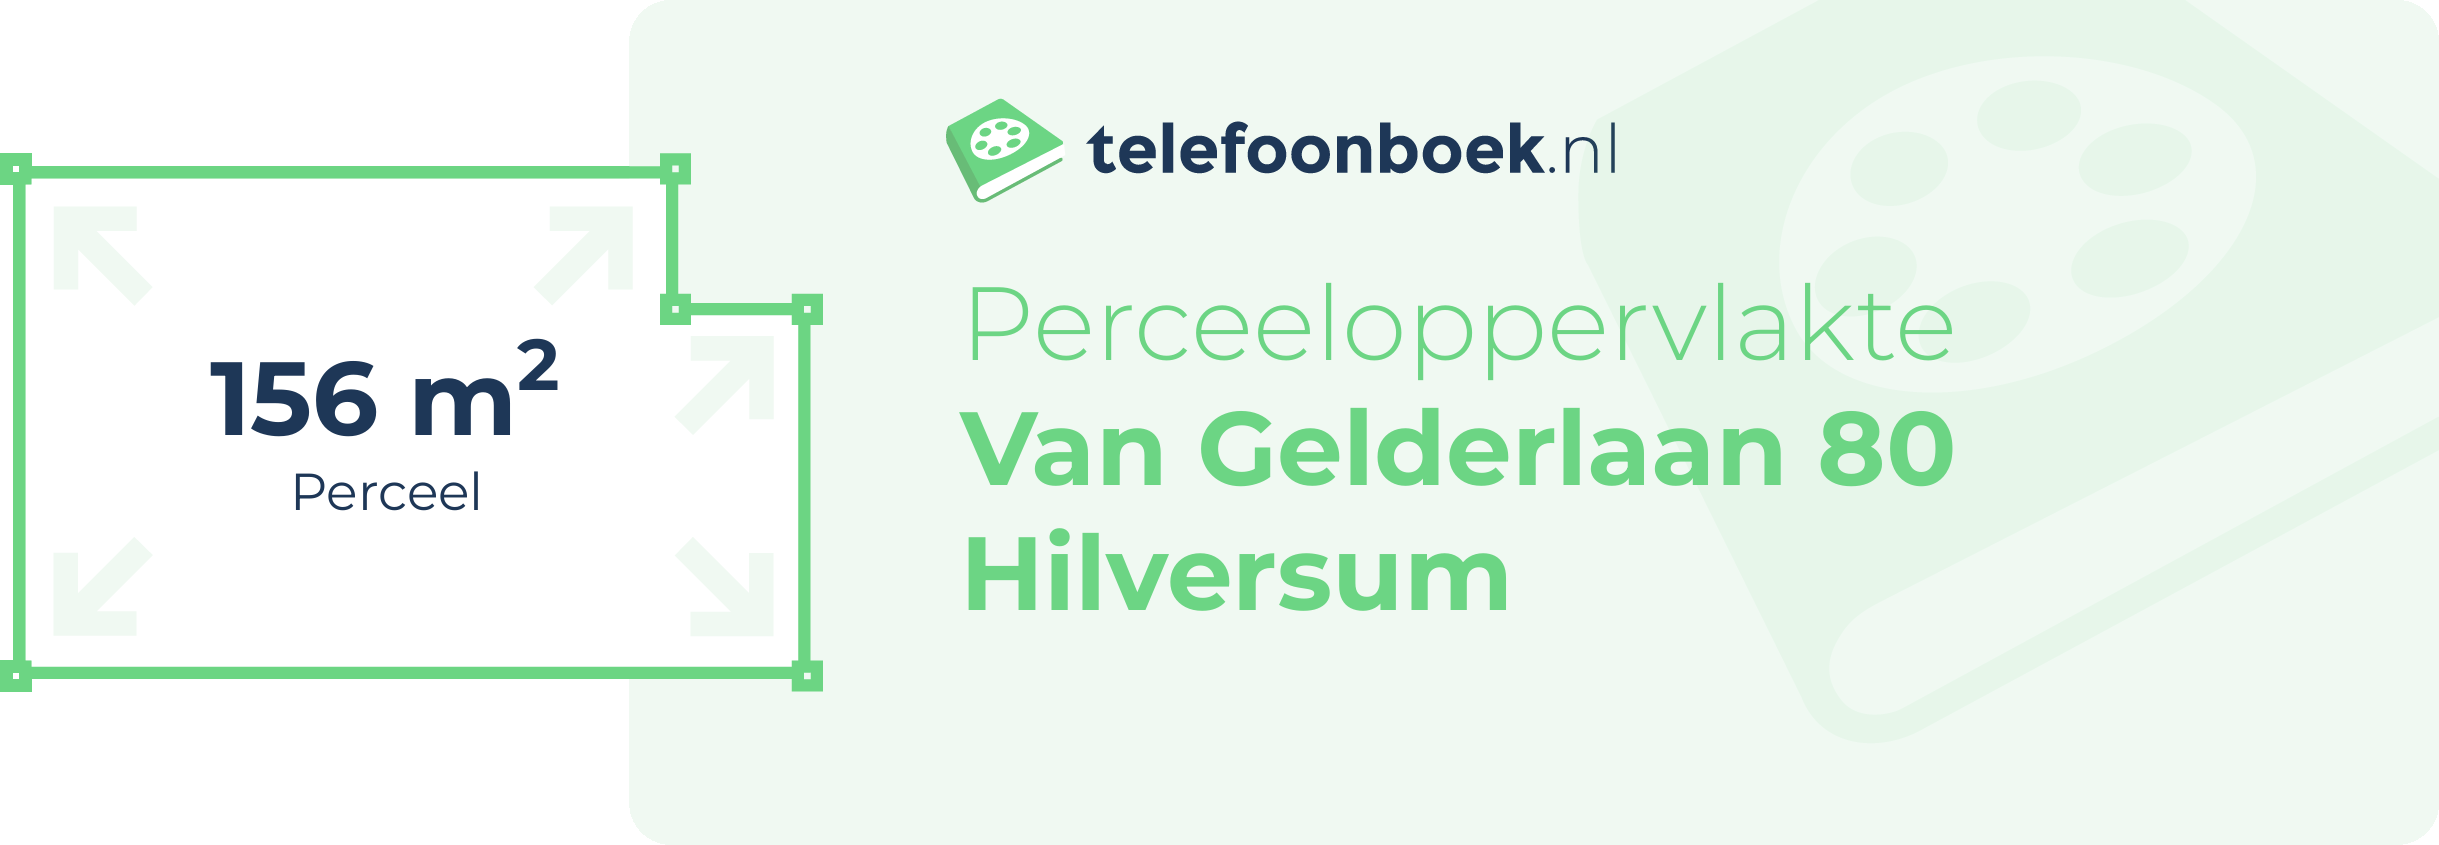 Perceeloppervlakte Van Gelderlaan 80 Hilversum